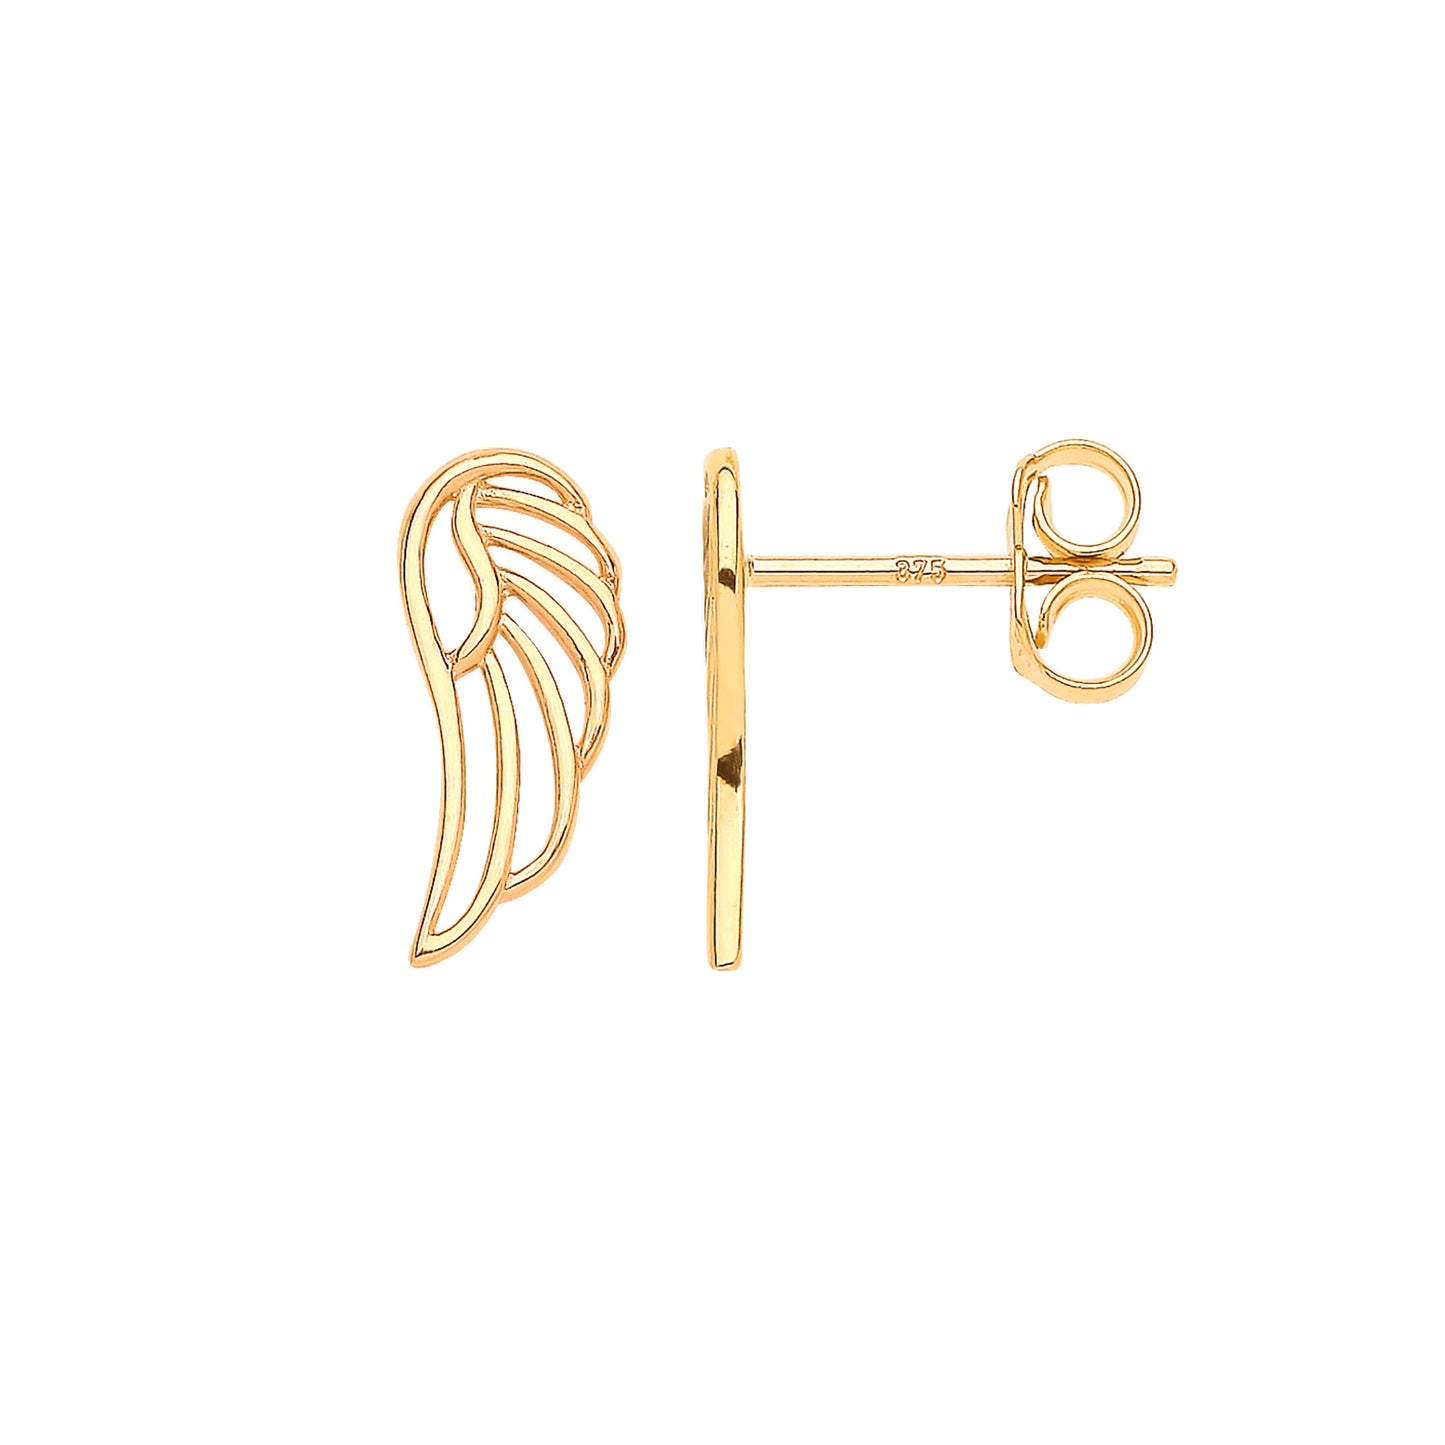 Gold Angel Wing Stud Earrings